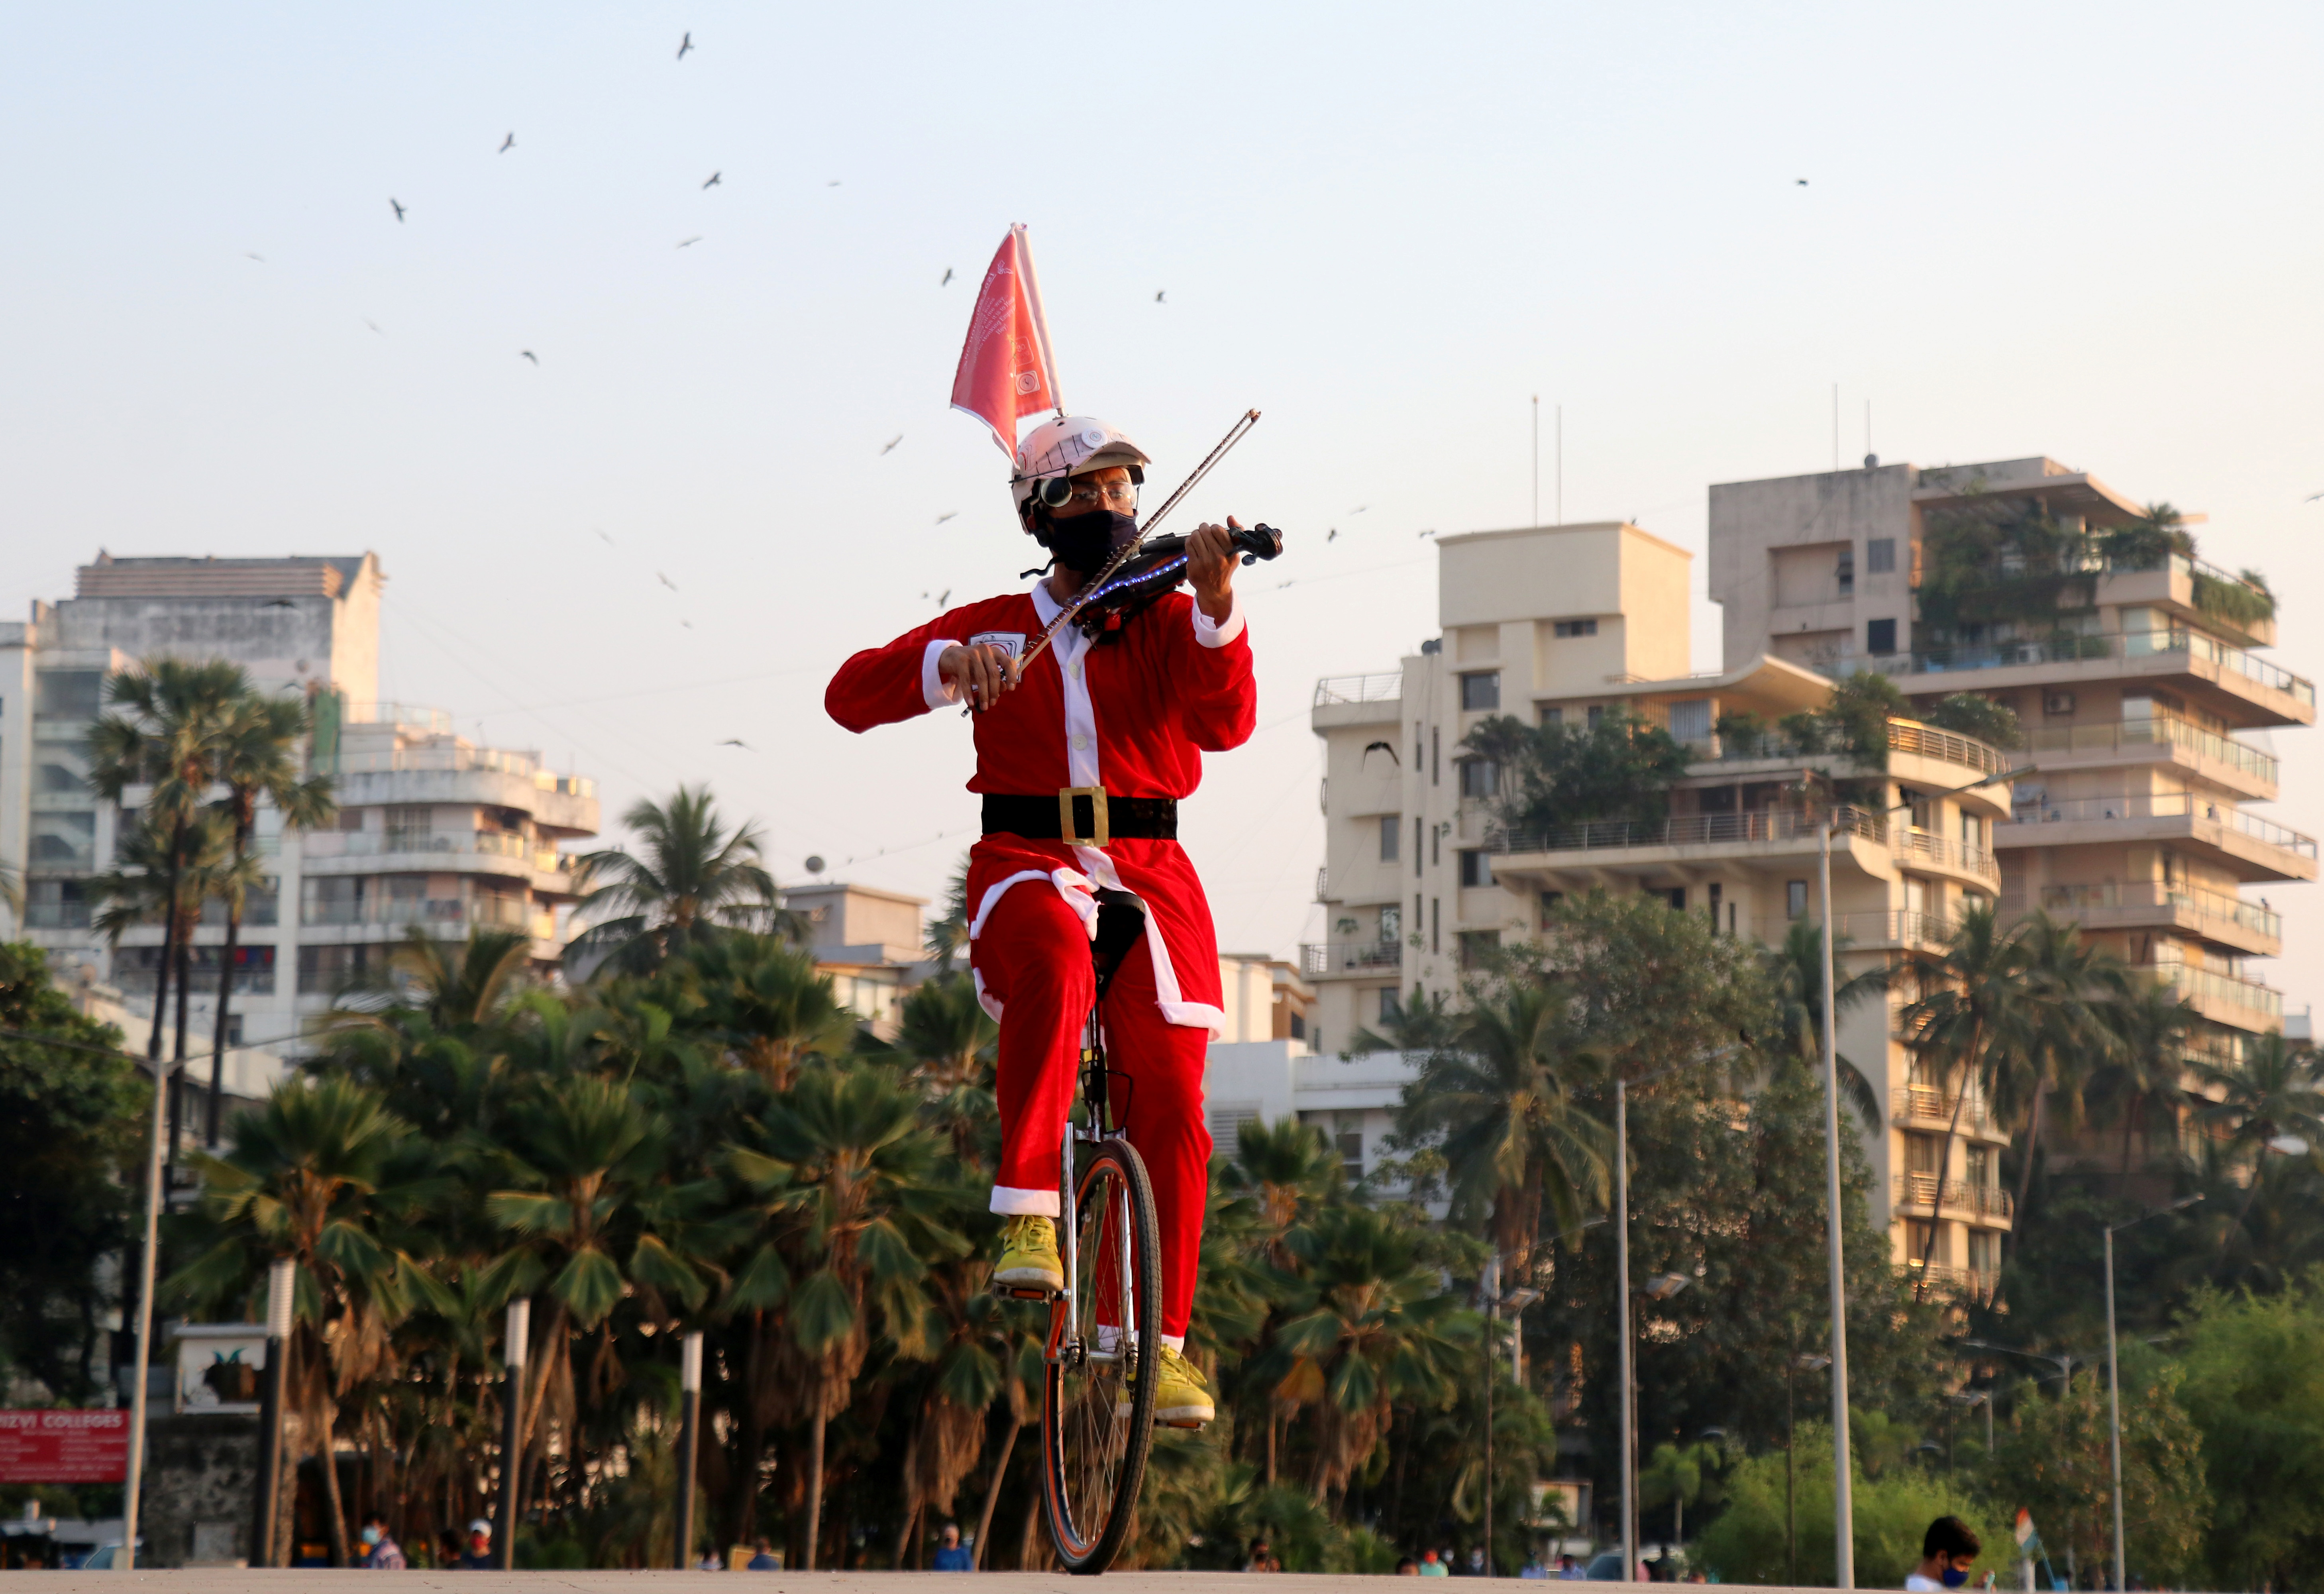 Un artista con un disfraz de Papá Noel monta un monociclo mientras toca un violín a lo largo de un paseo en Mumbai, India (REUTERS/Niharika Kulkarni)